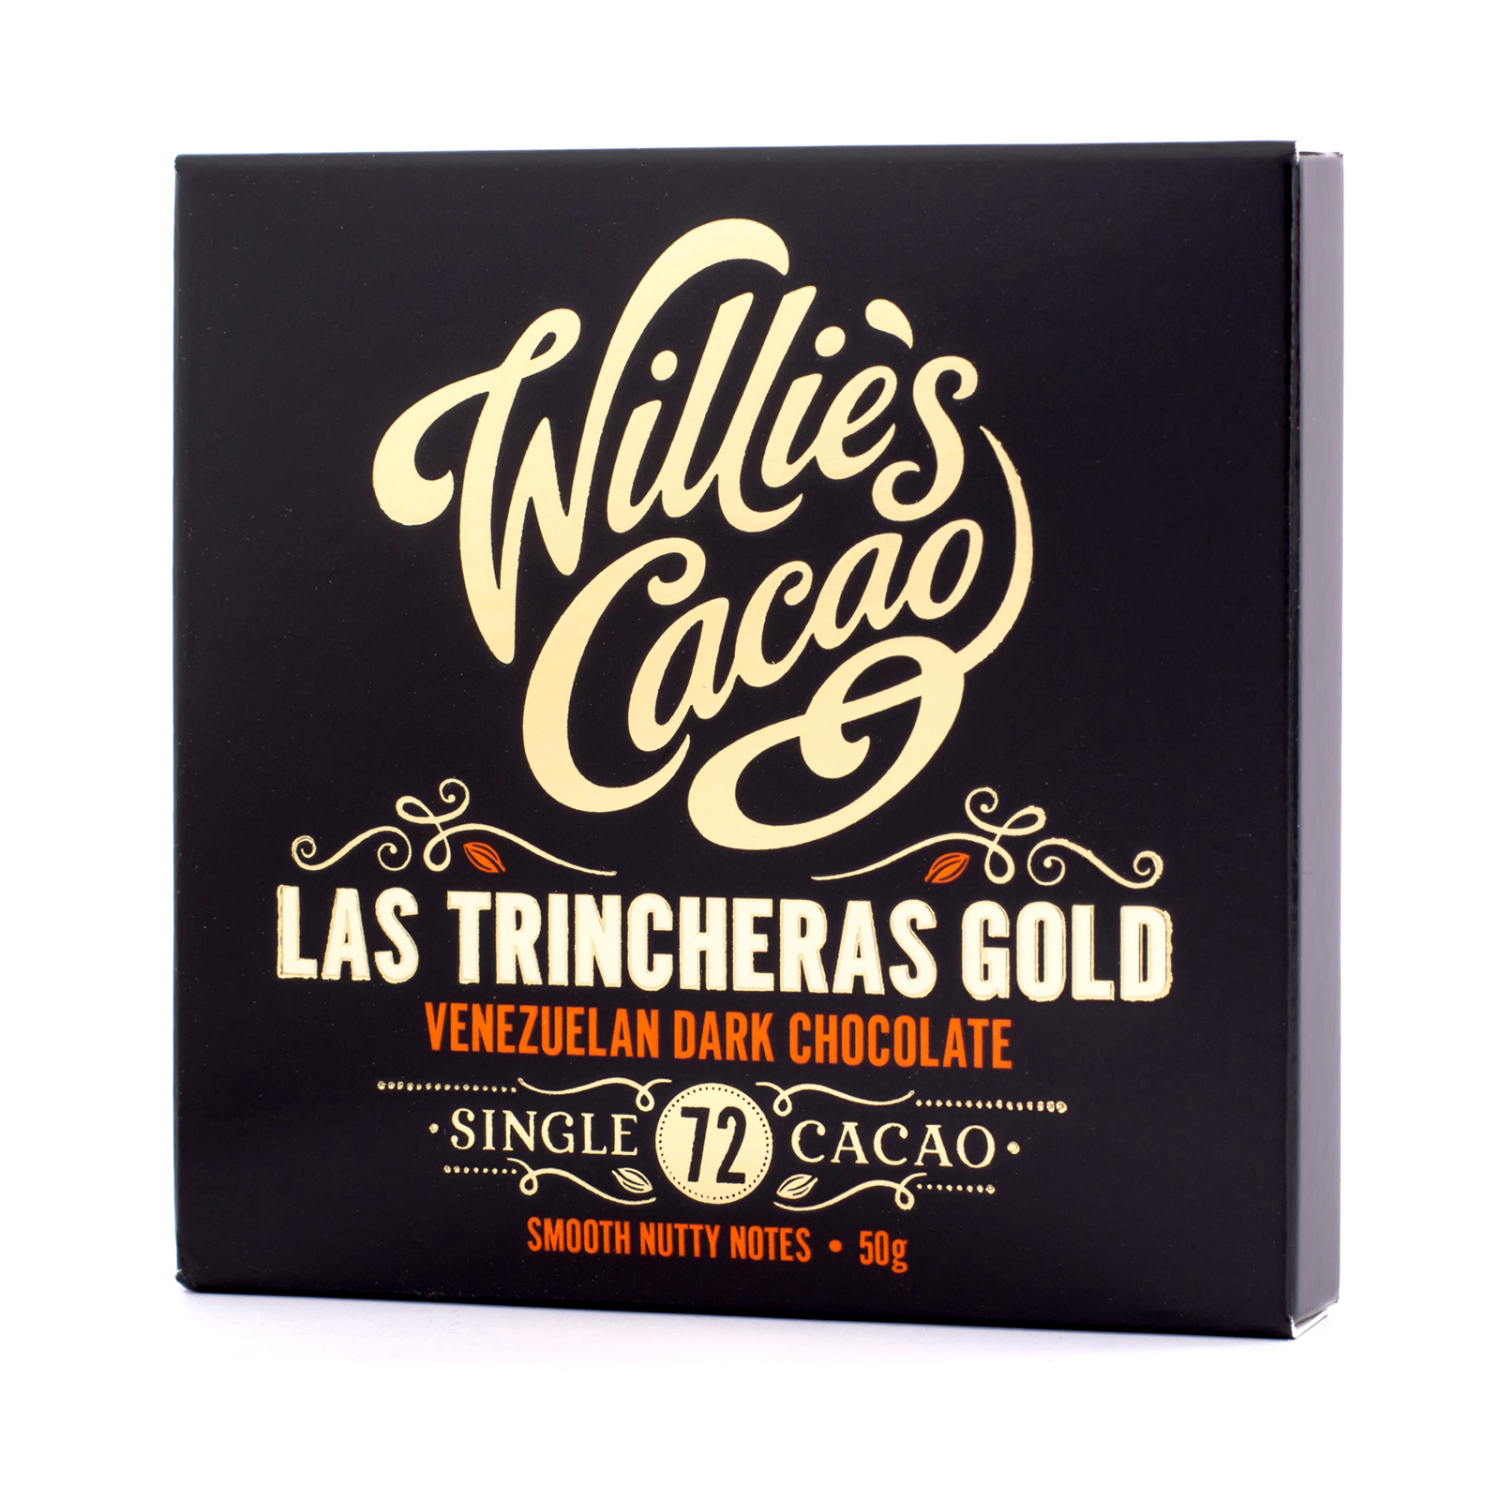 Willie's Cacao - 72% Las Trincheras Gold 50g